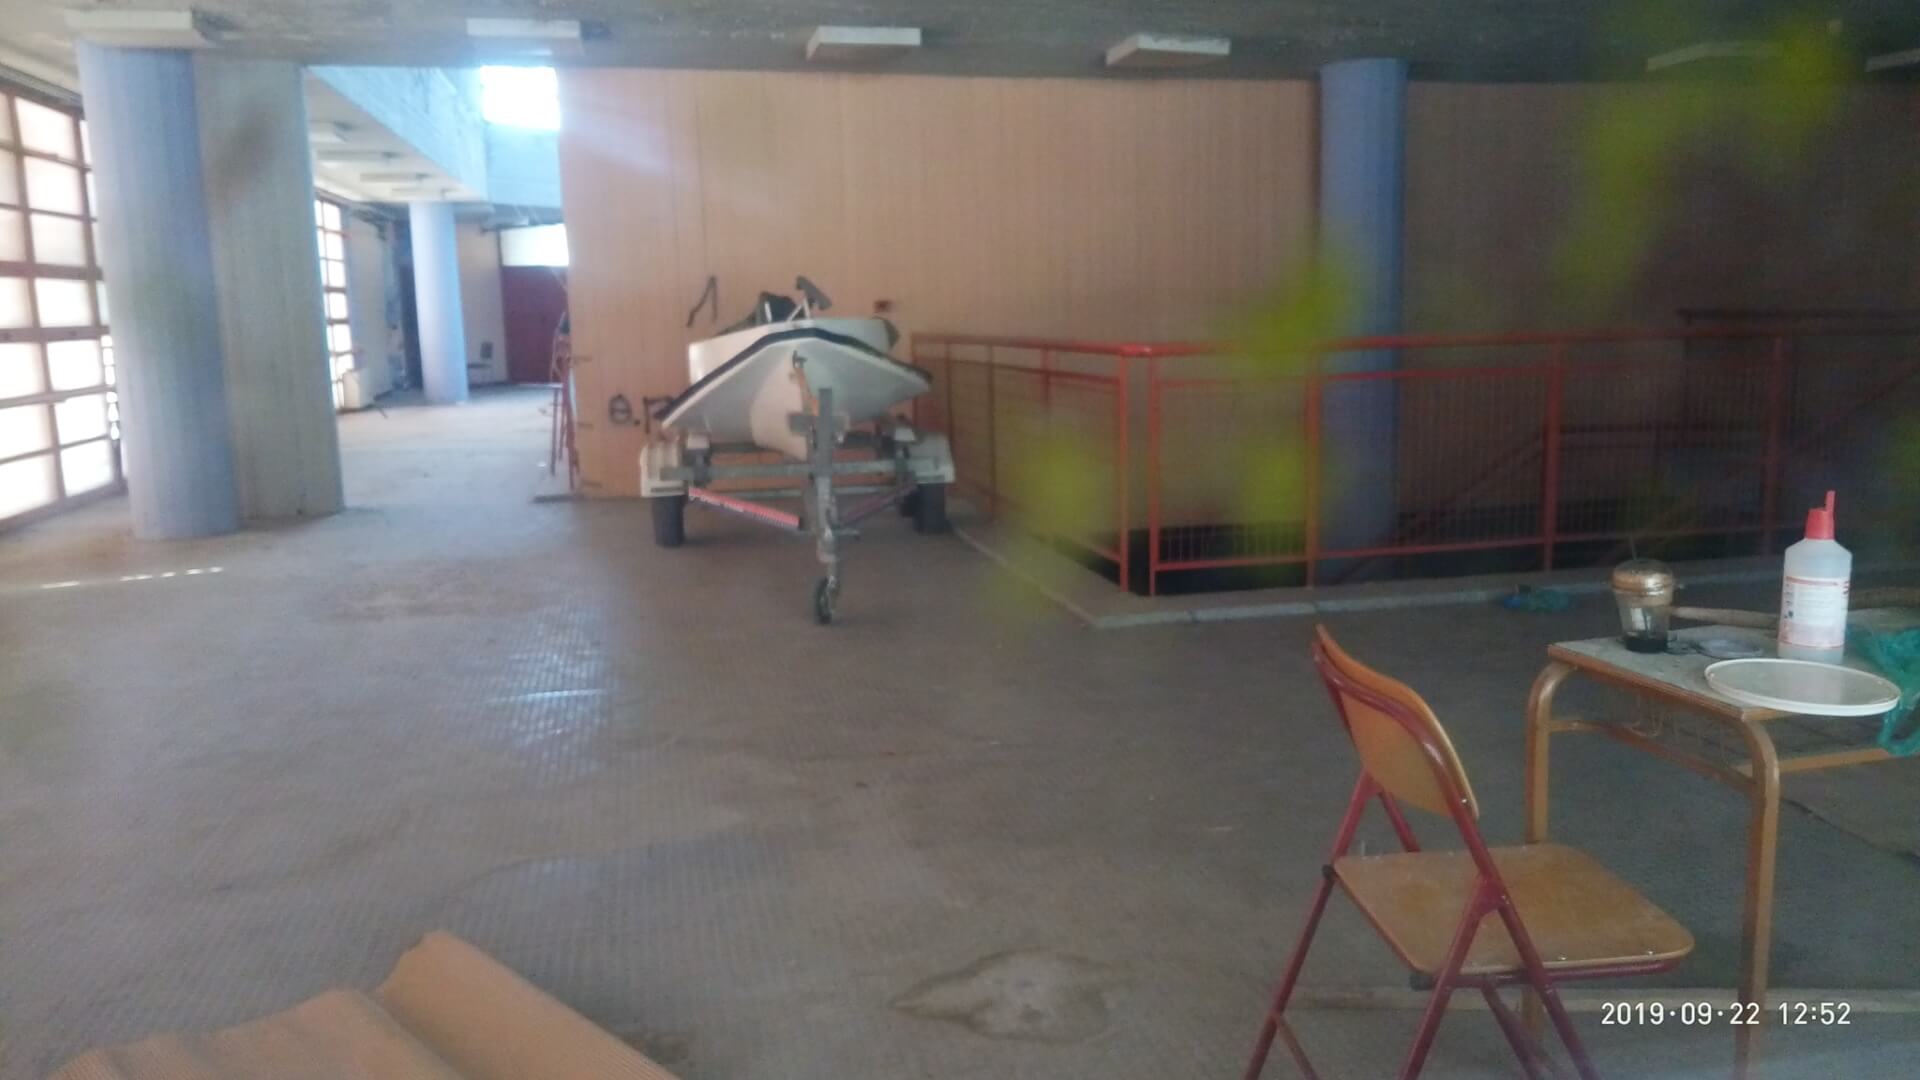 Απίστευτο Και Όμως Αληθινό – Βρέθηκε Παρκαρισμένο Jet Ski Σε Αίθουσα Σχολείου Στην Ηλιούπολη